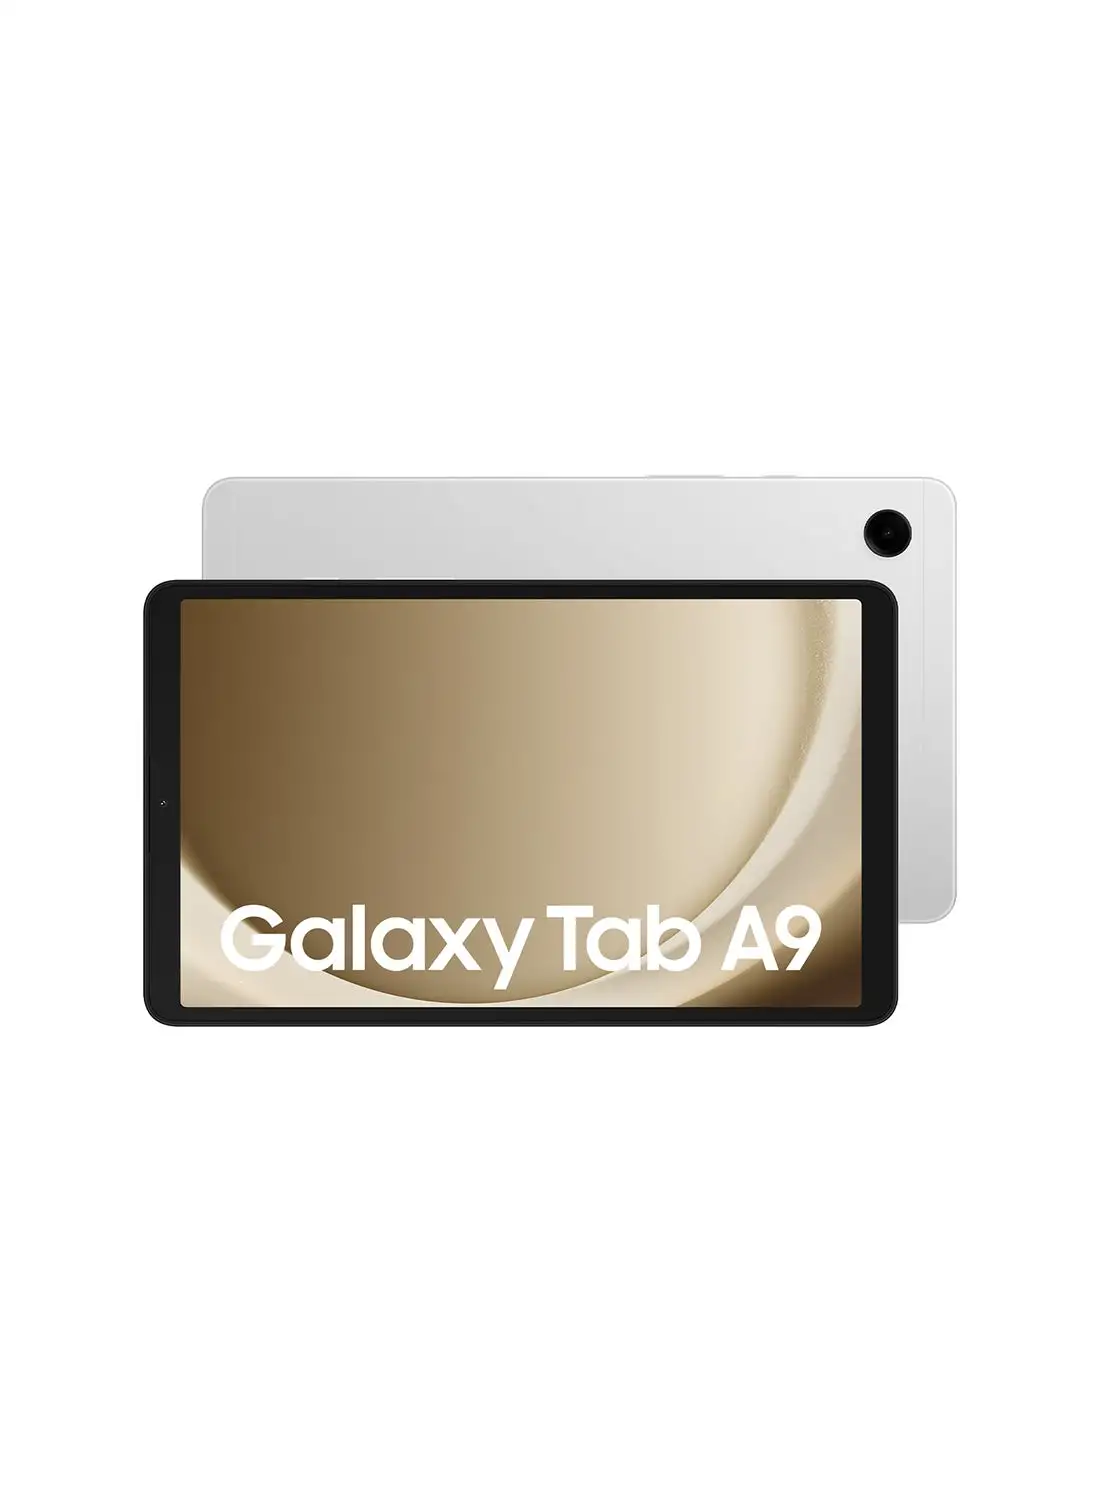 Samsung Galaxy Tab A9 Silver 8GB RAM 128GB LTE - Middle East Version